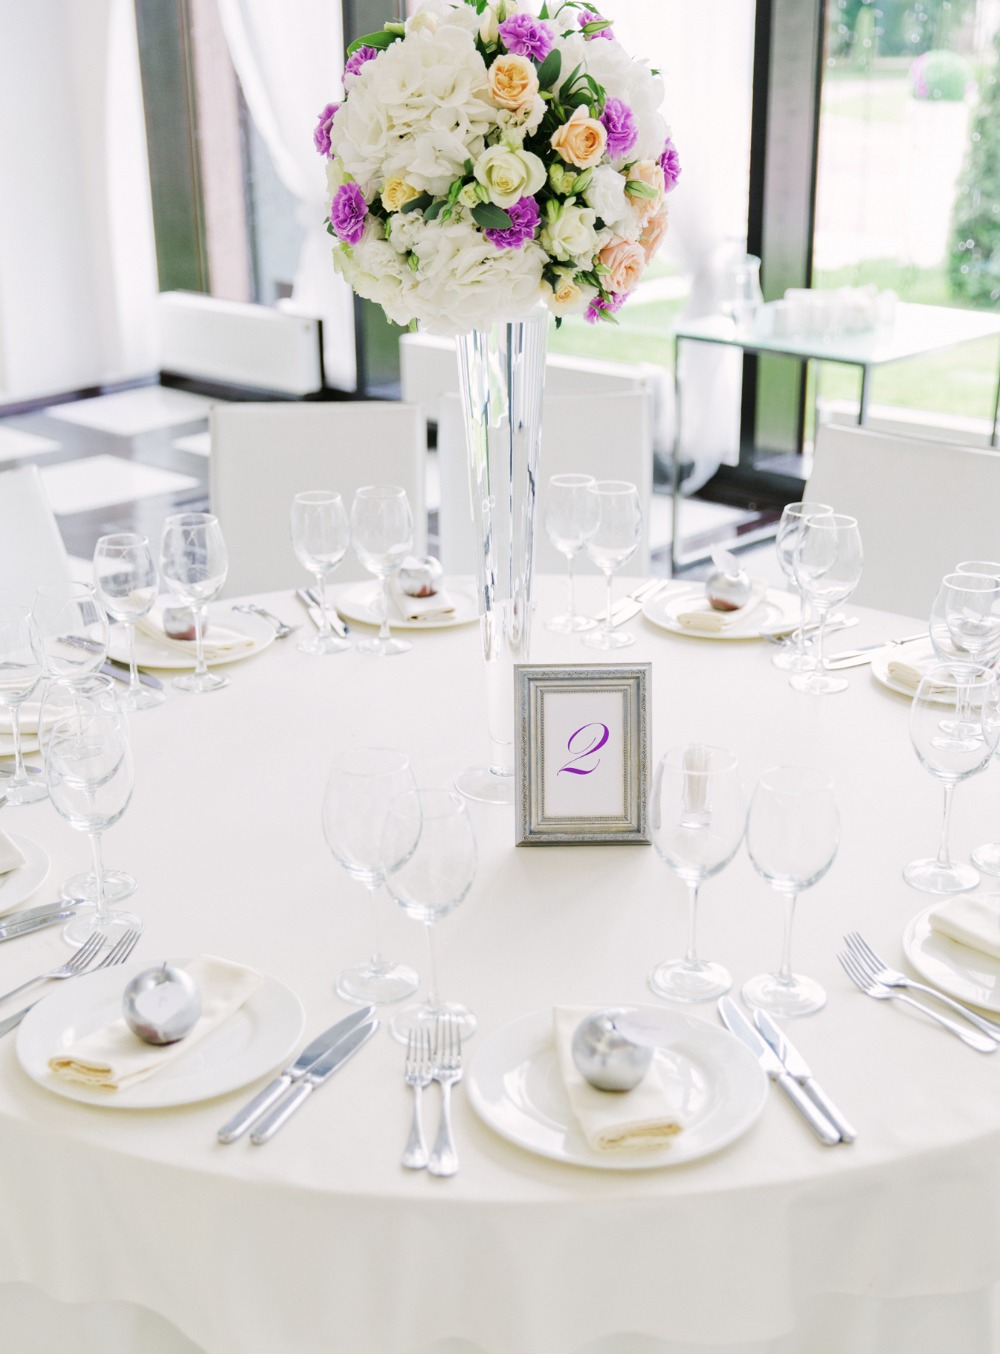 Elegant white and purple tablescape